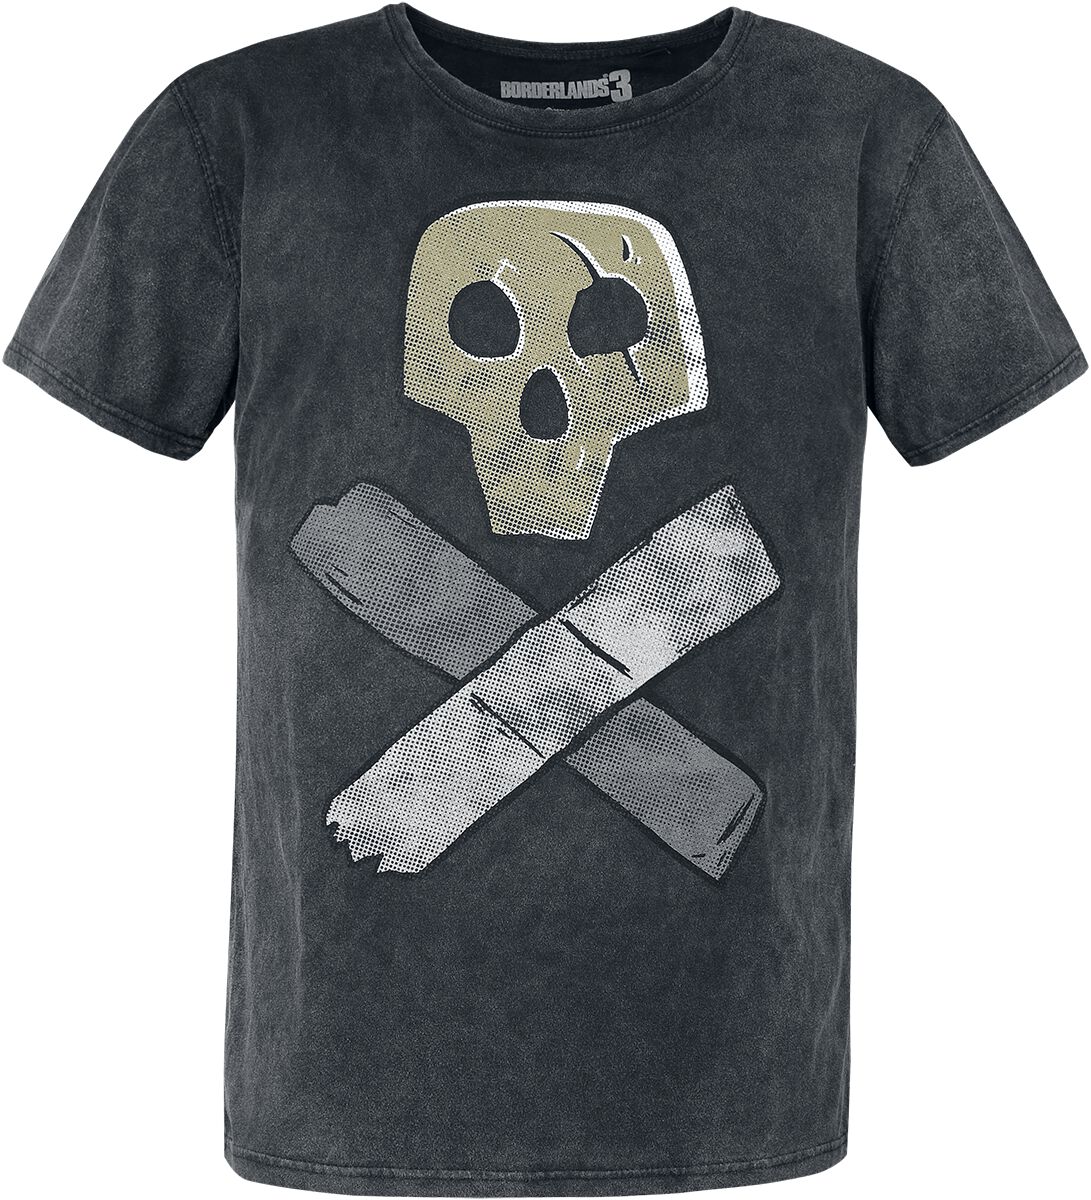 Borderlands - Gaming T-Shirt - 3 - Skull - S bis XL - für Männer - Größe S - grau  - EMP exklusives Merchandise!